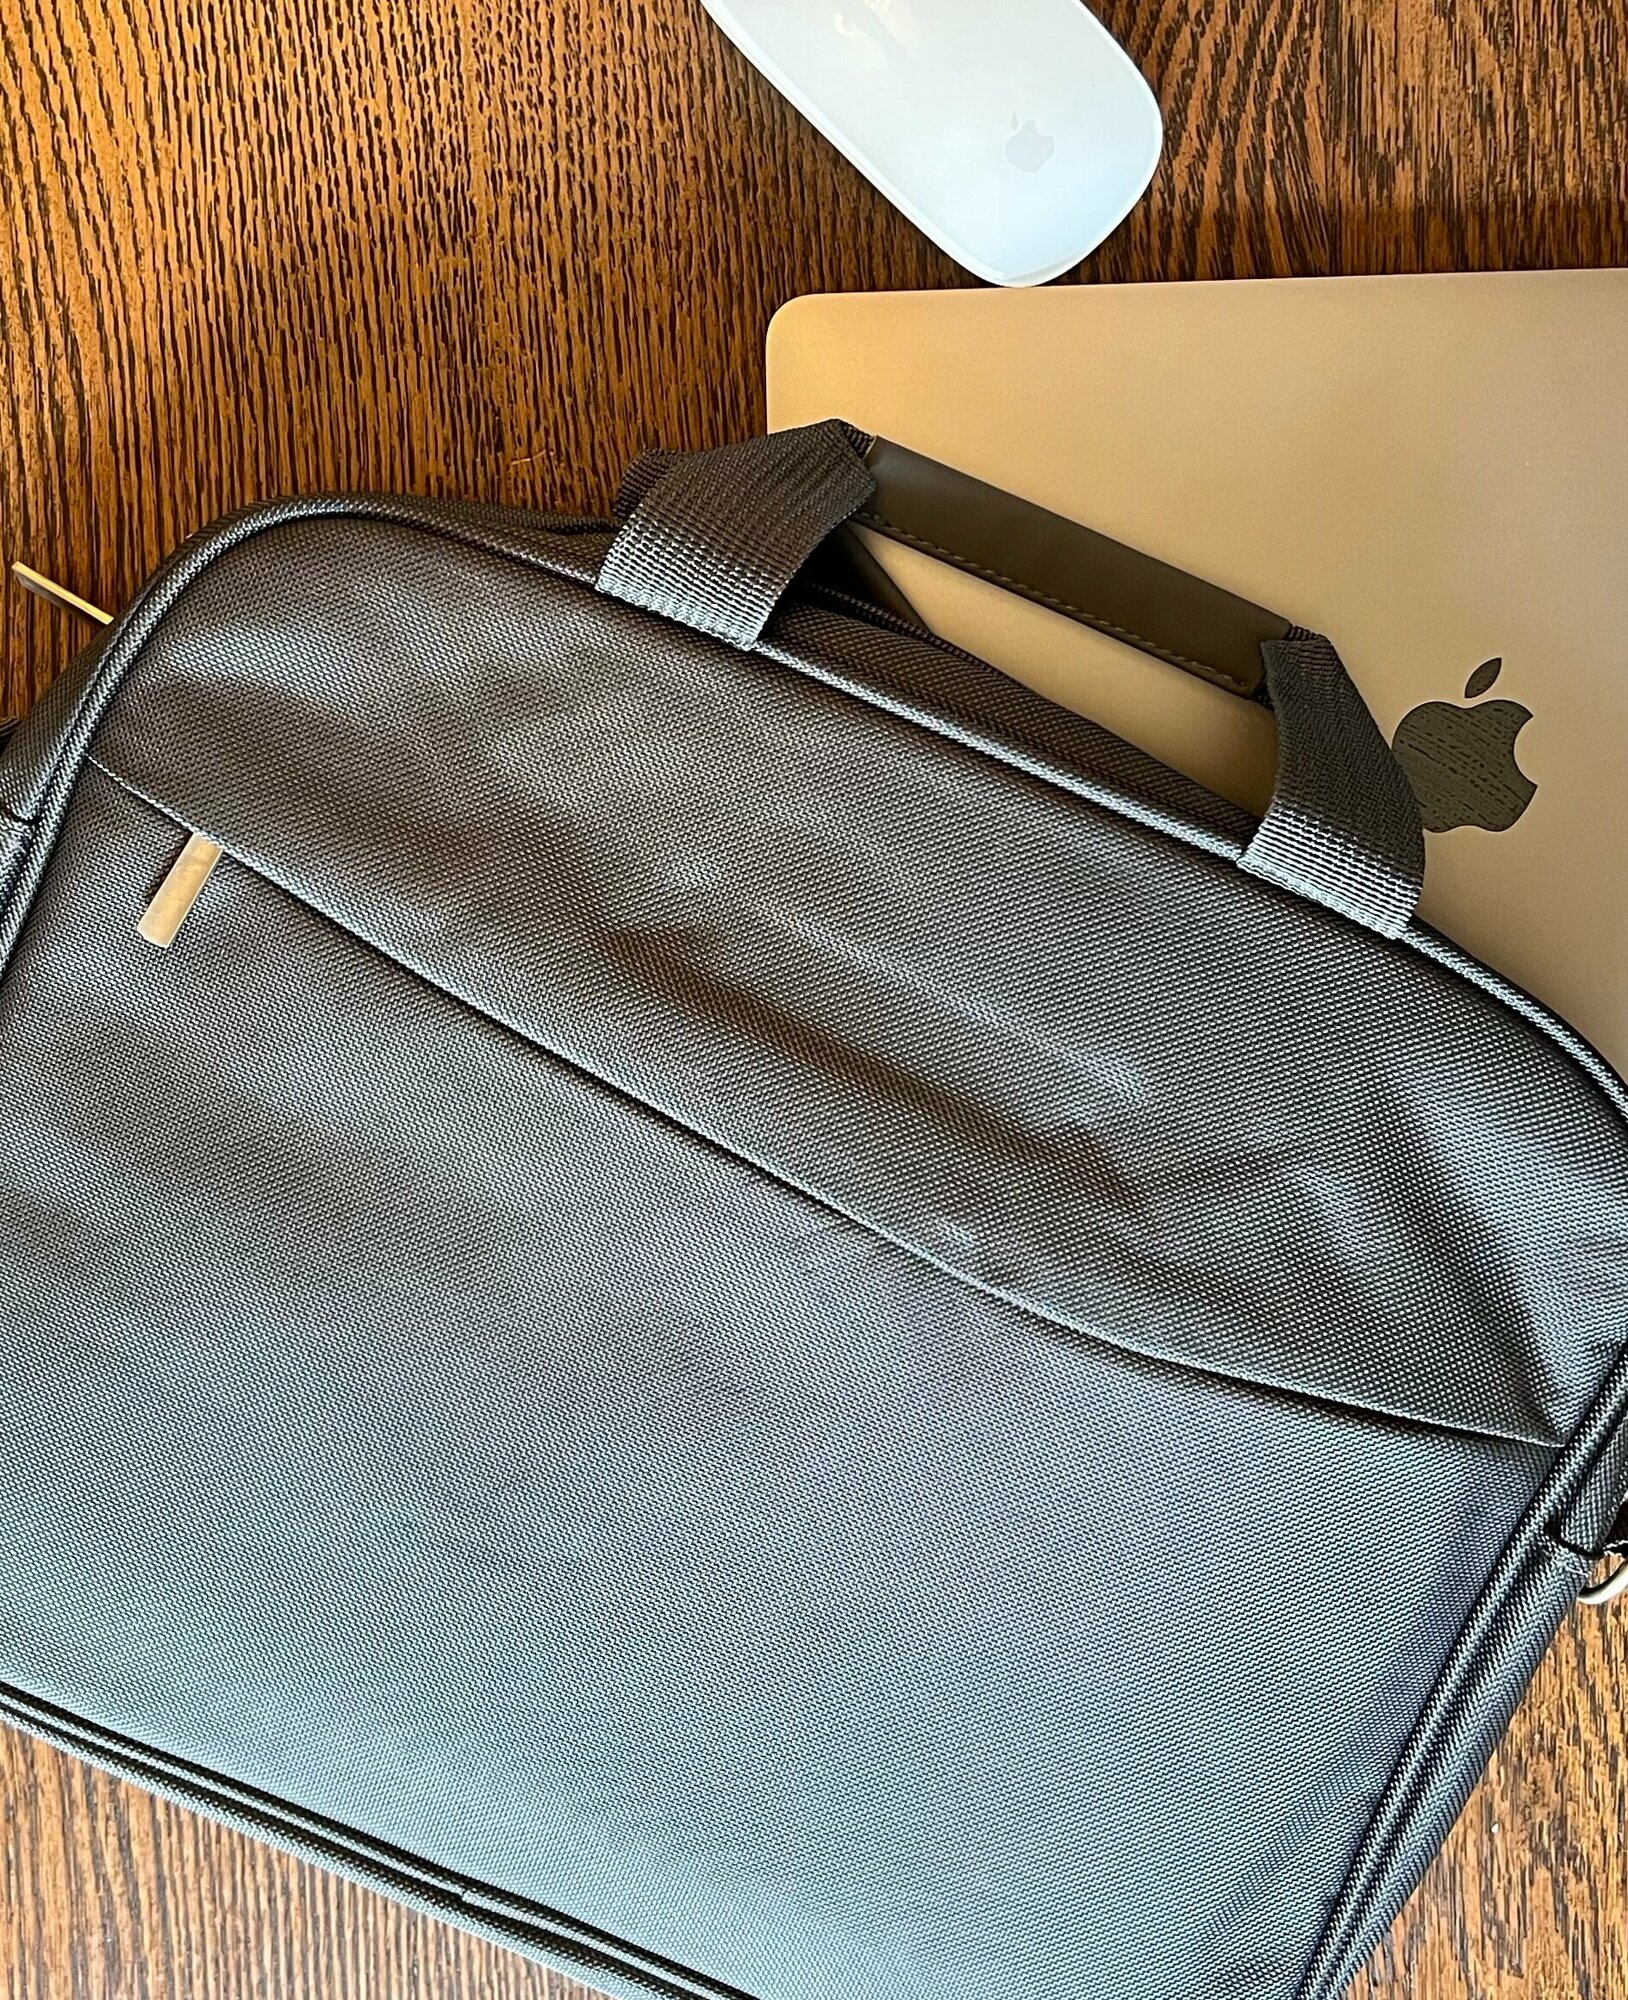 Сумка для ноутбука макбука (Macbook) 13-14.1 дюймов с ремнем мужская женская / Деловая сумка через плечо размер 38-28-5 см серый